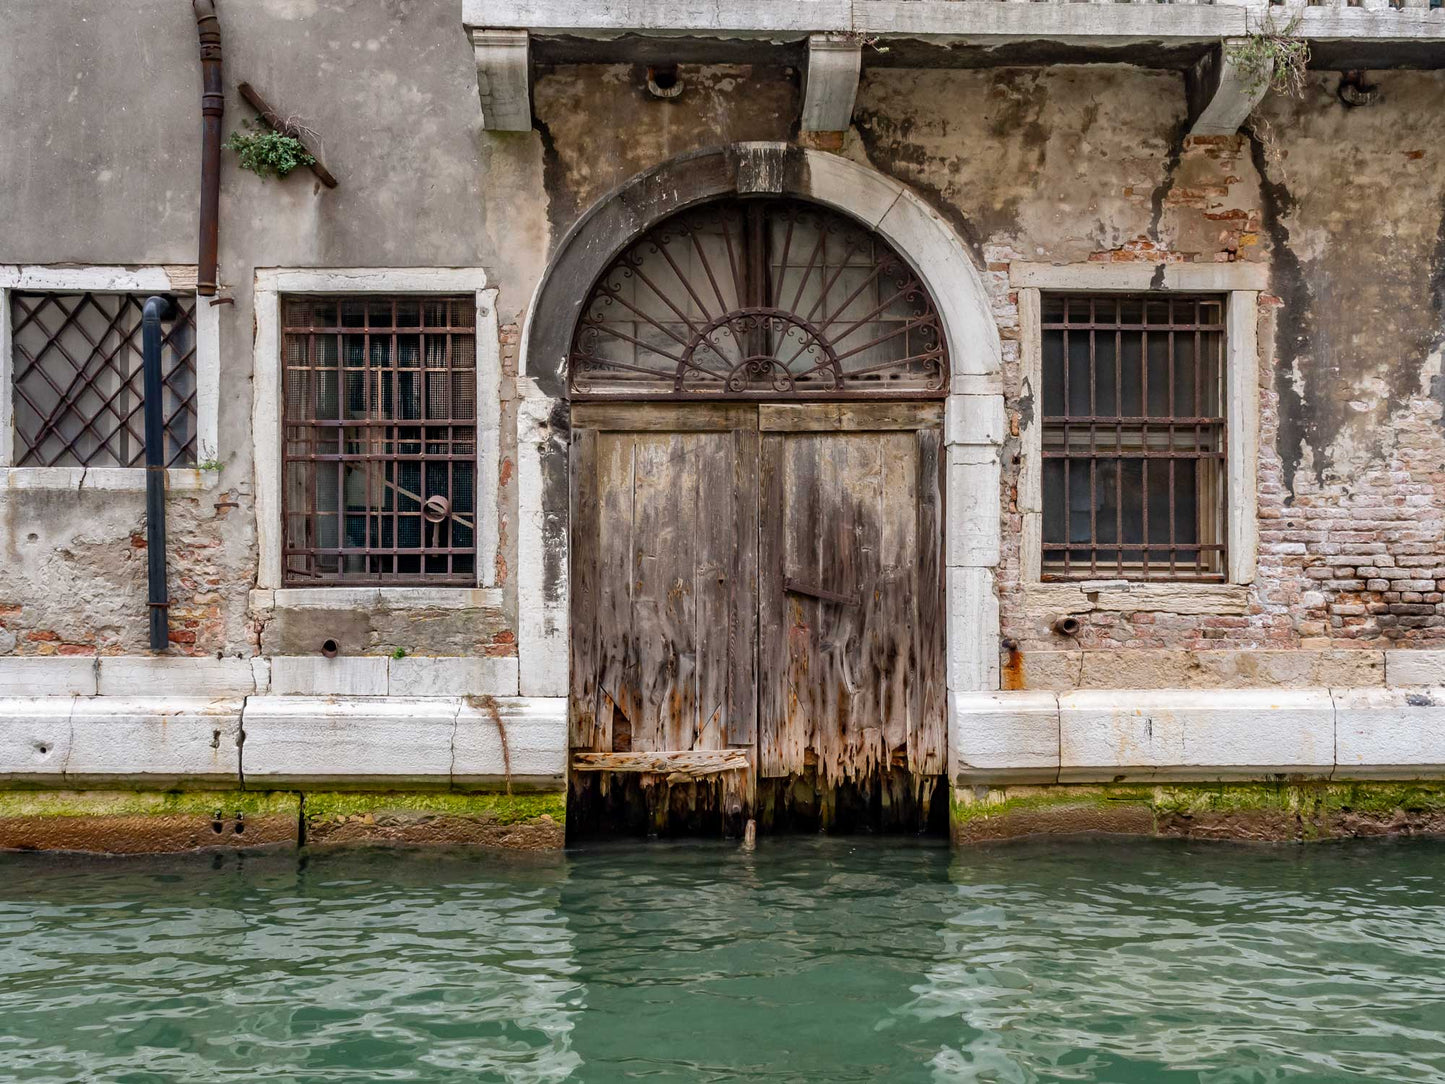 Wet Entry, Venice, Italy 2014